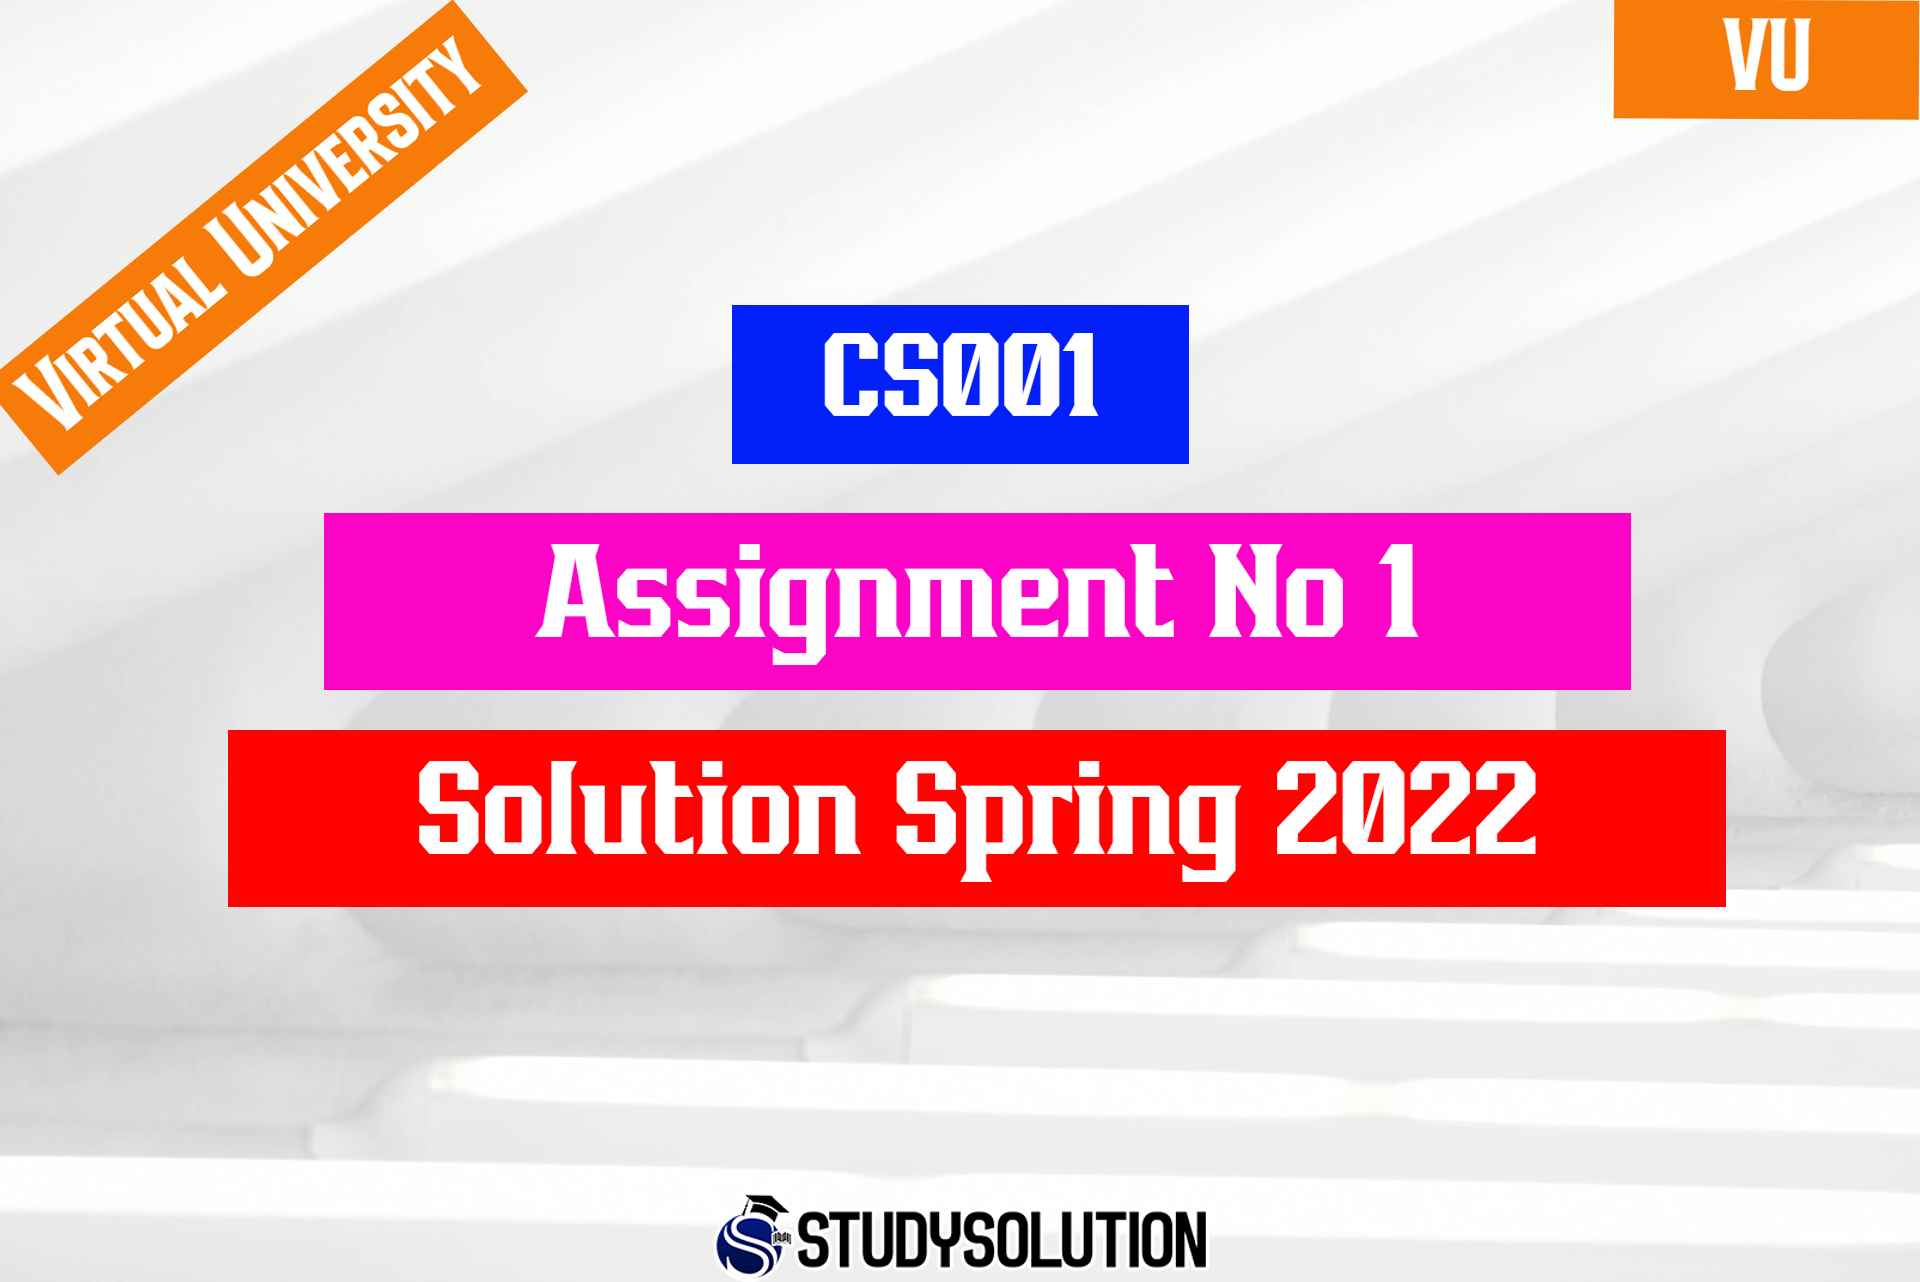 CS001 Assignment No 1 Solution Spring 2022